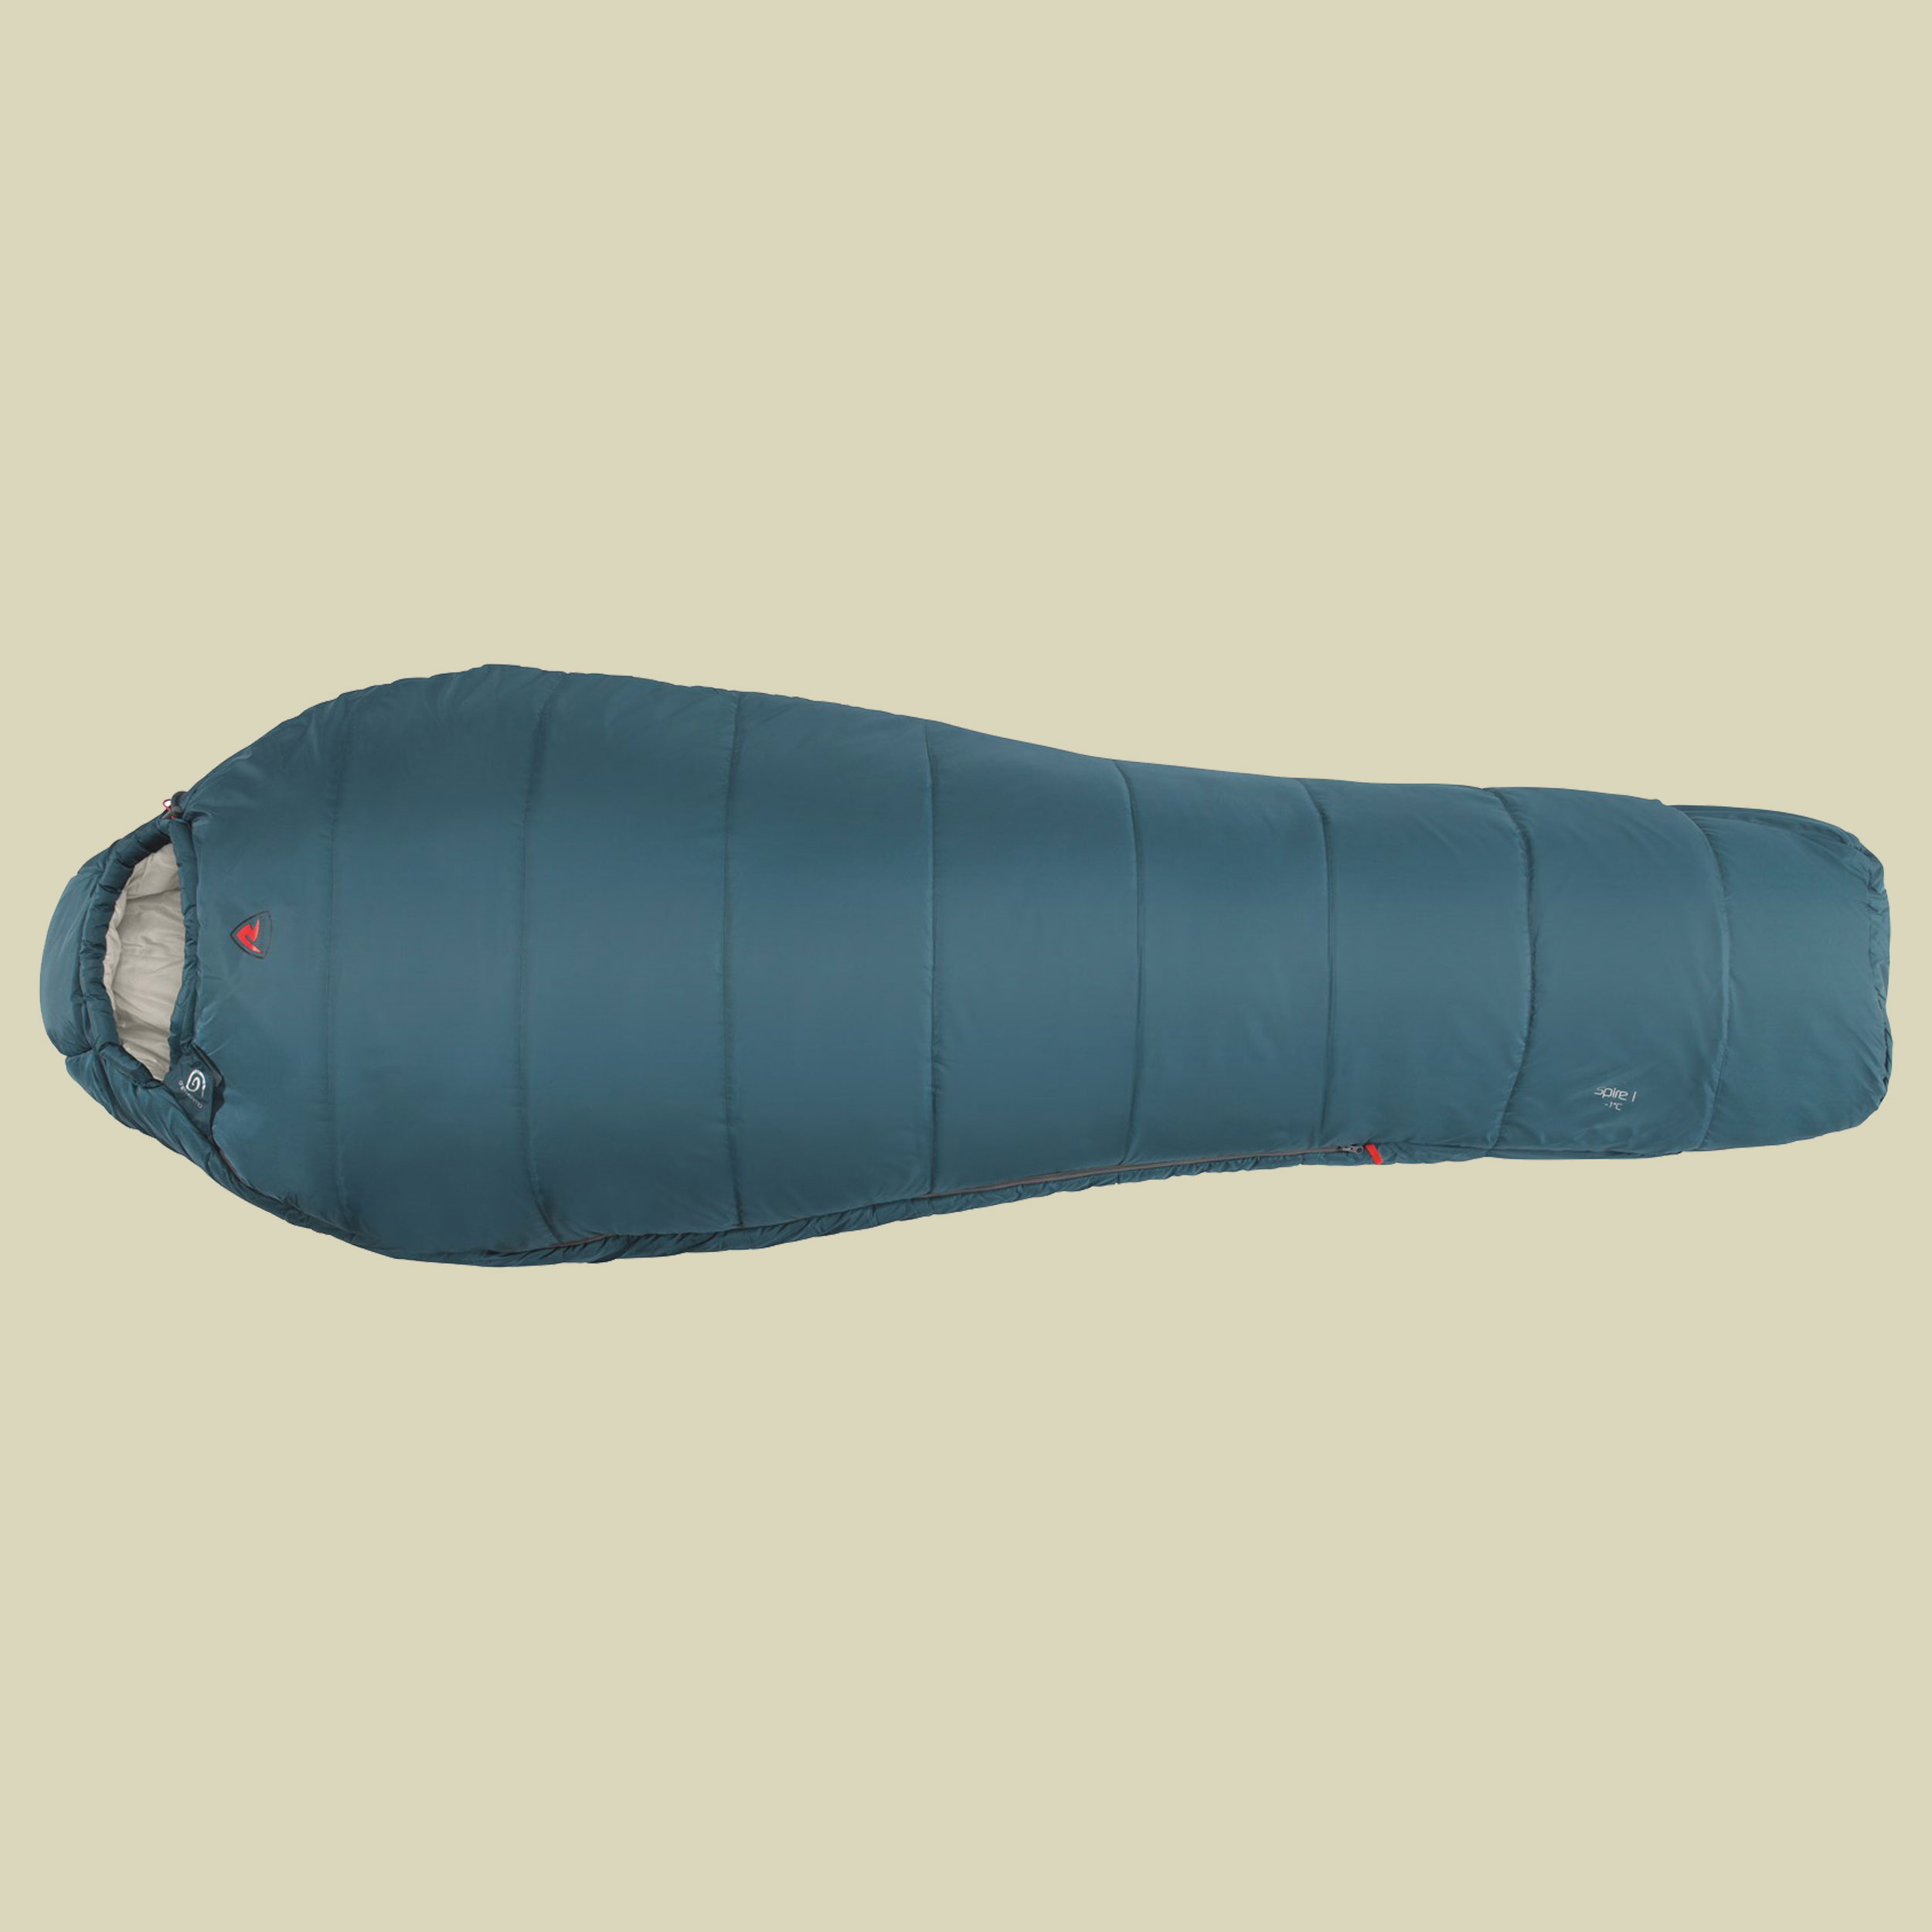 Spire I bis Körpergröße: 195 cm Farbe: ocean blue, Reißverschluss links